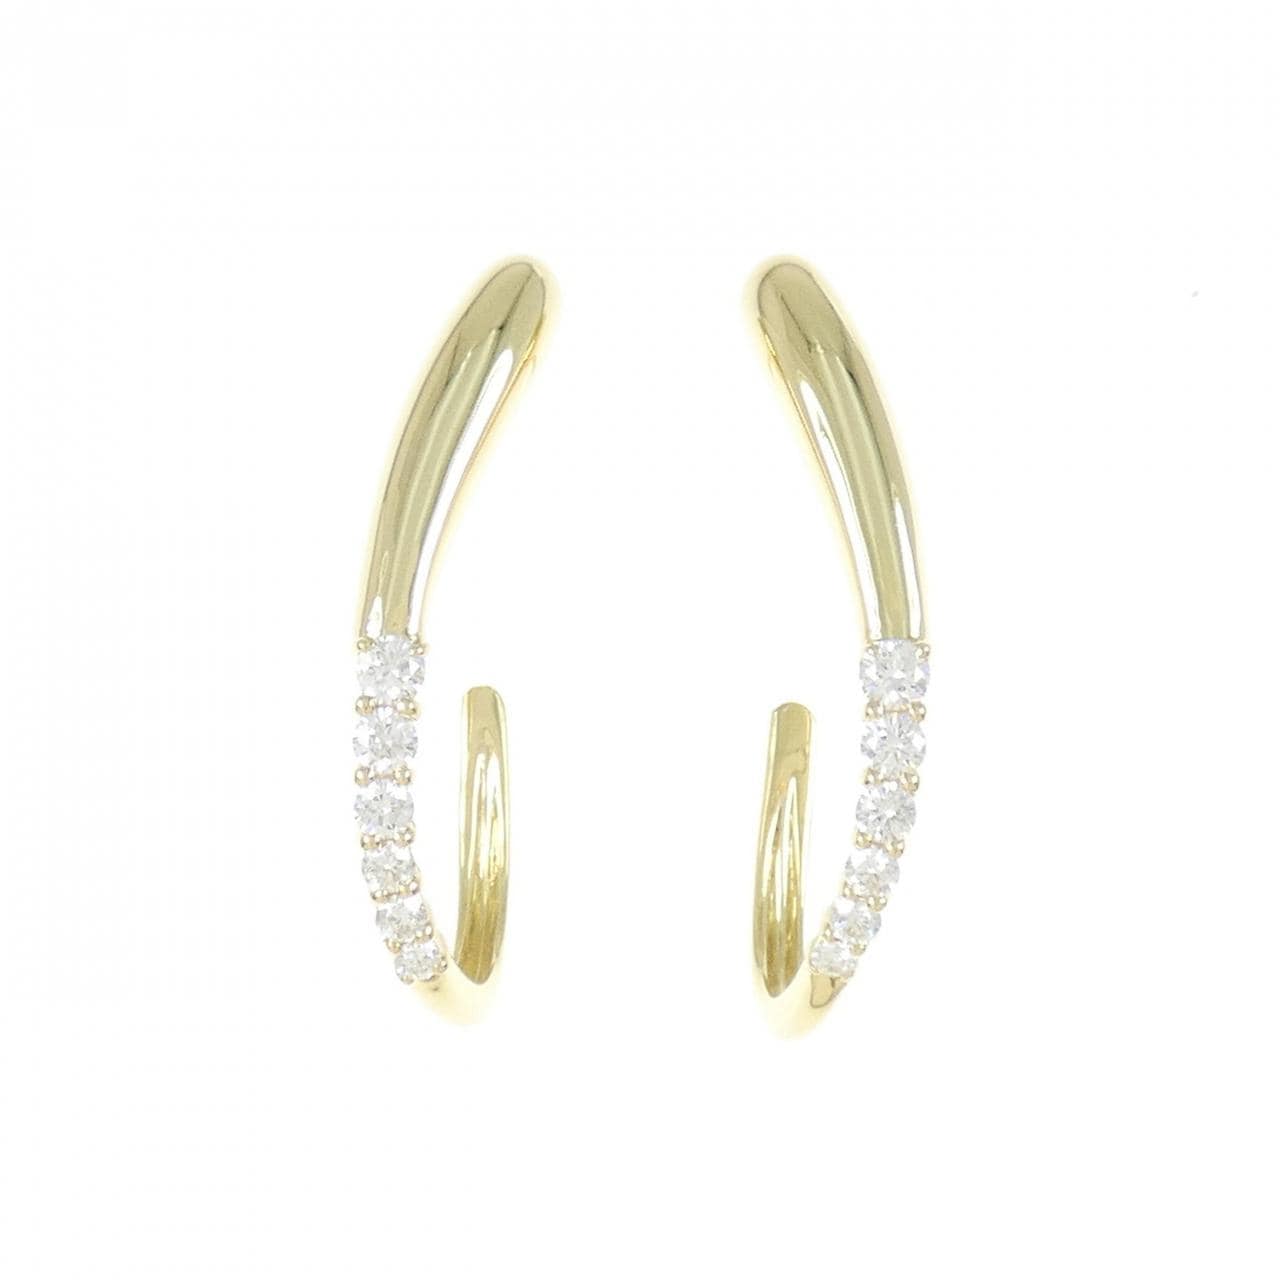 K18YG Diamond Earrings 0.55CT